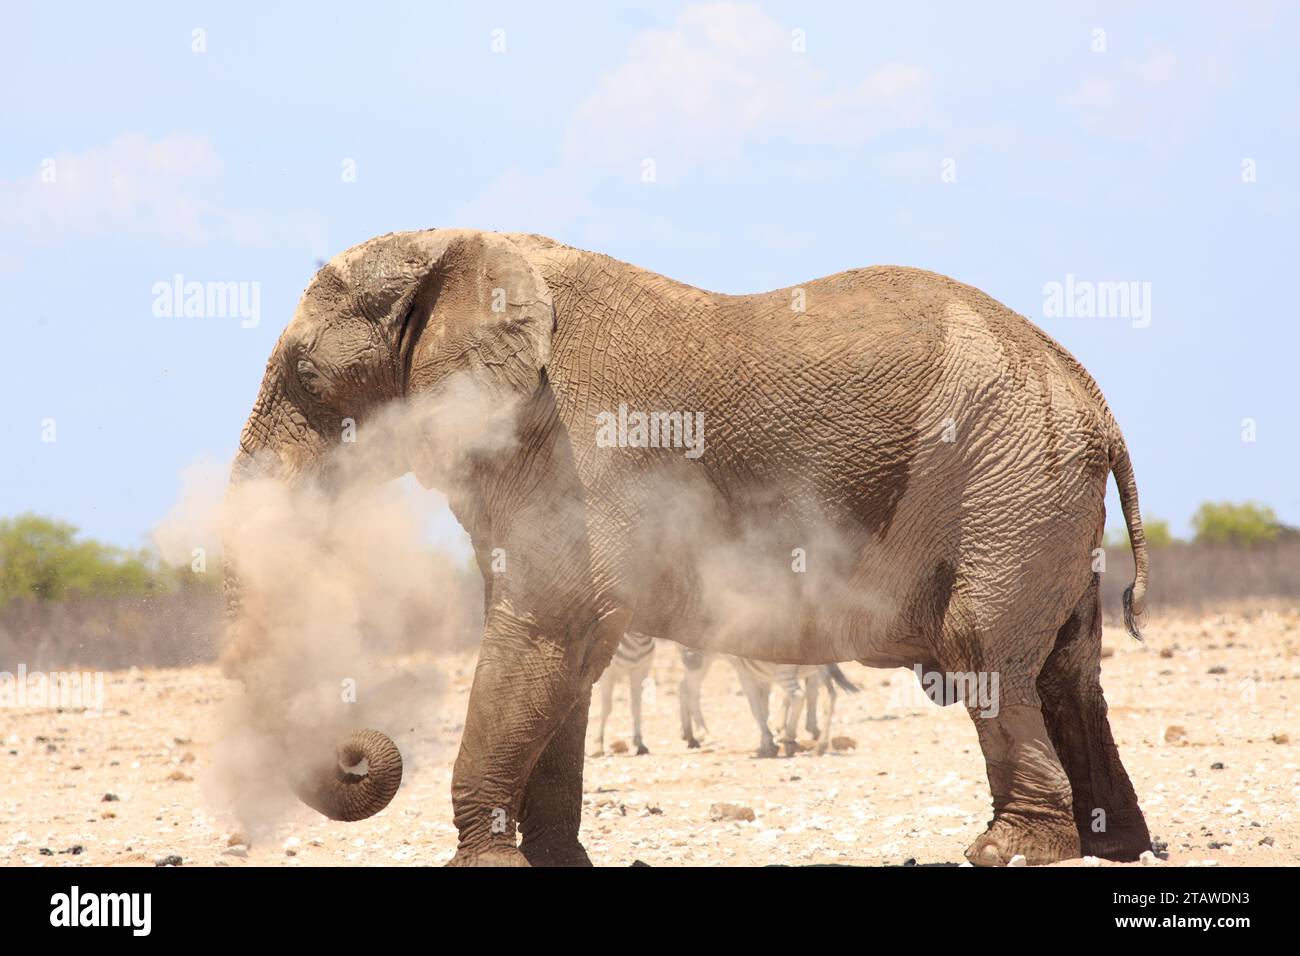 Großer BullenElefant, in Staub gehüllt. Er staubt sich mit trockenem Sand ab, um sich abzukühlen und seine Haut zu schützen, während Zebras im Hintergrund laufen. Stockfoto